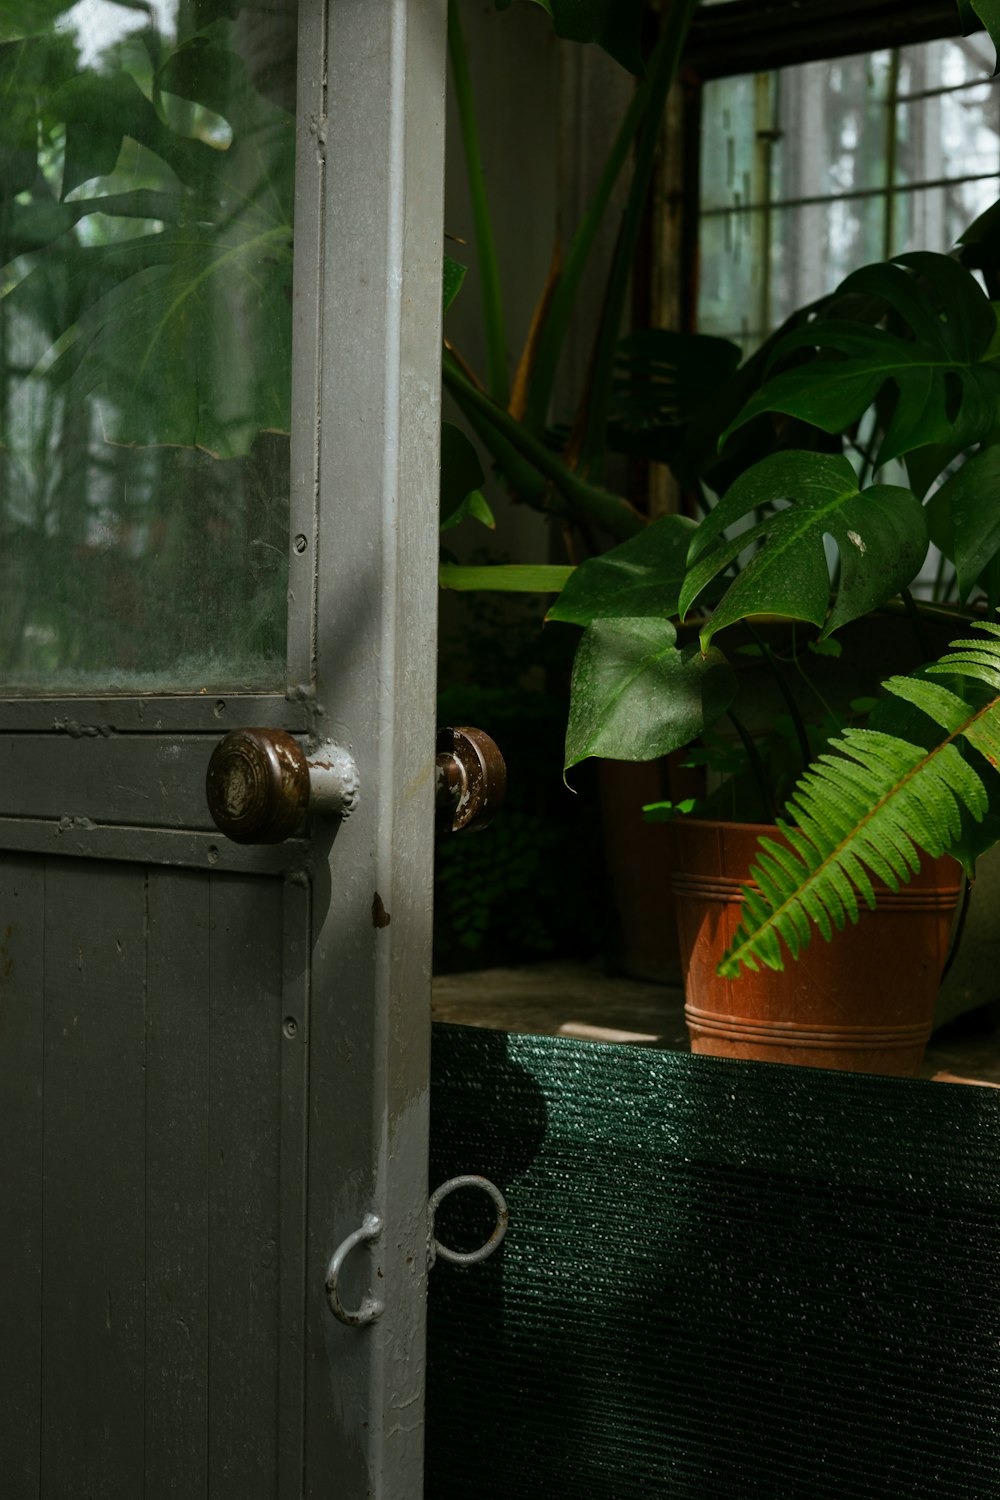 Una planta en maceta sentada junto a una puerta